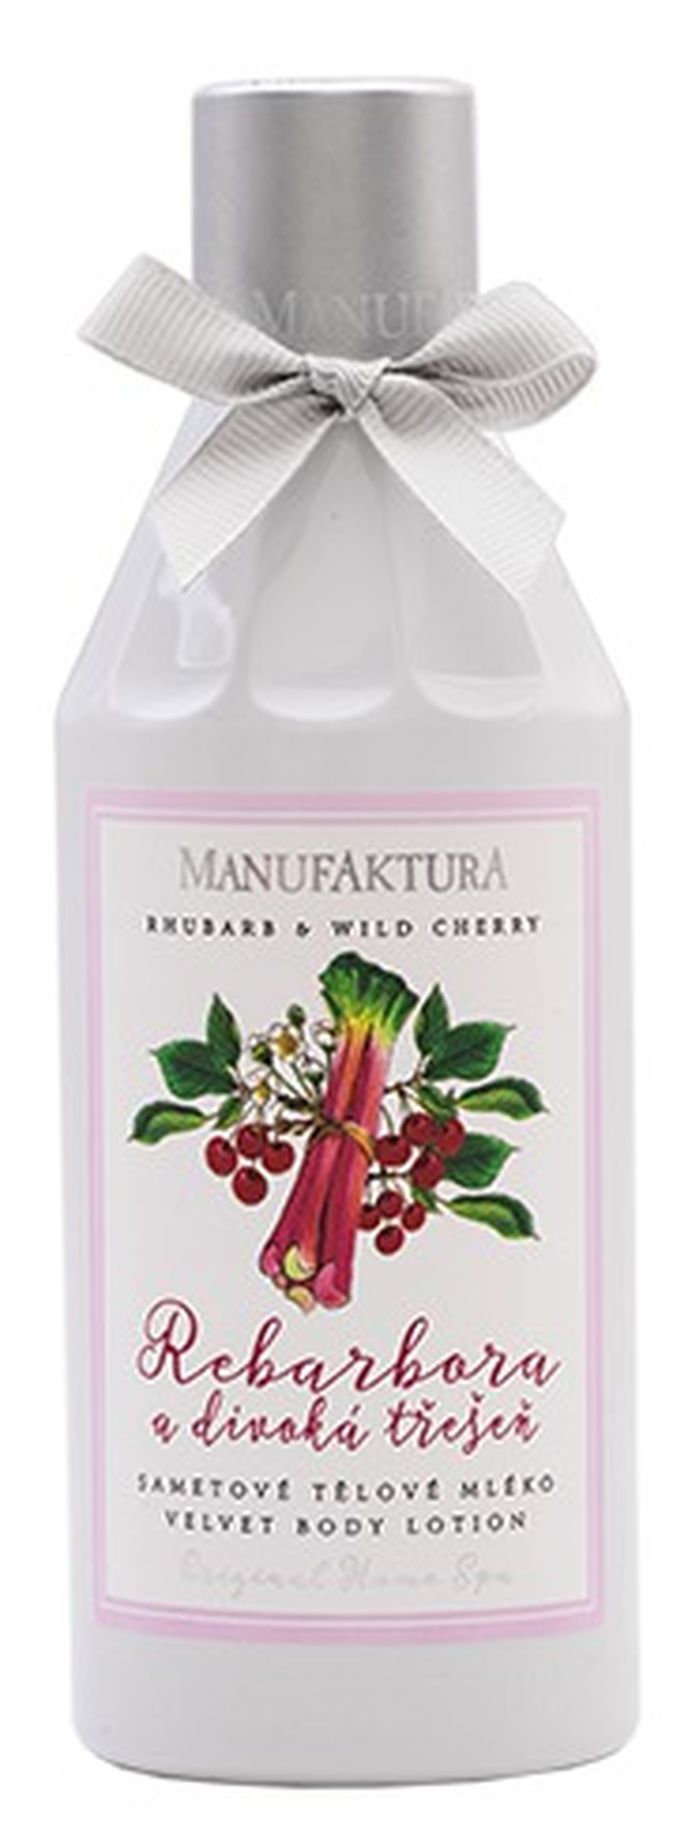 Hydratační sametové tělové mléko s výtažky z rebarbory a divoké třešně, Manufaktura, 239 Kč/255 ml